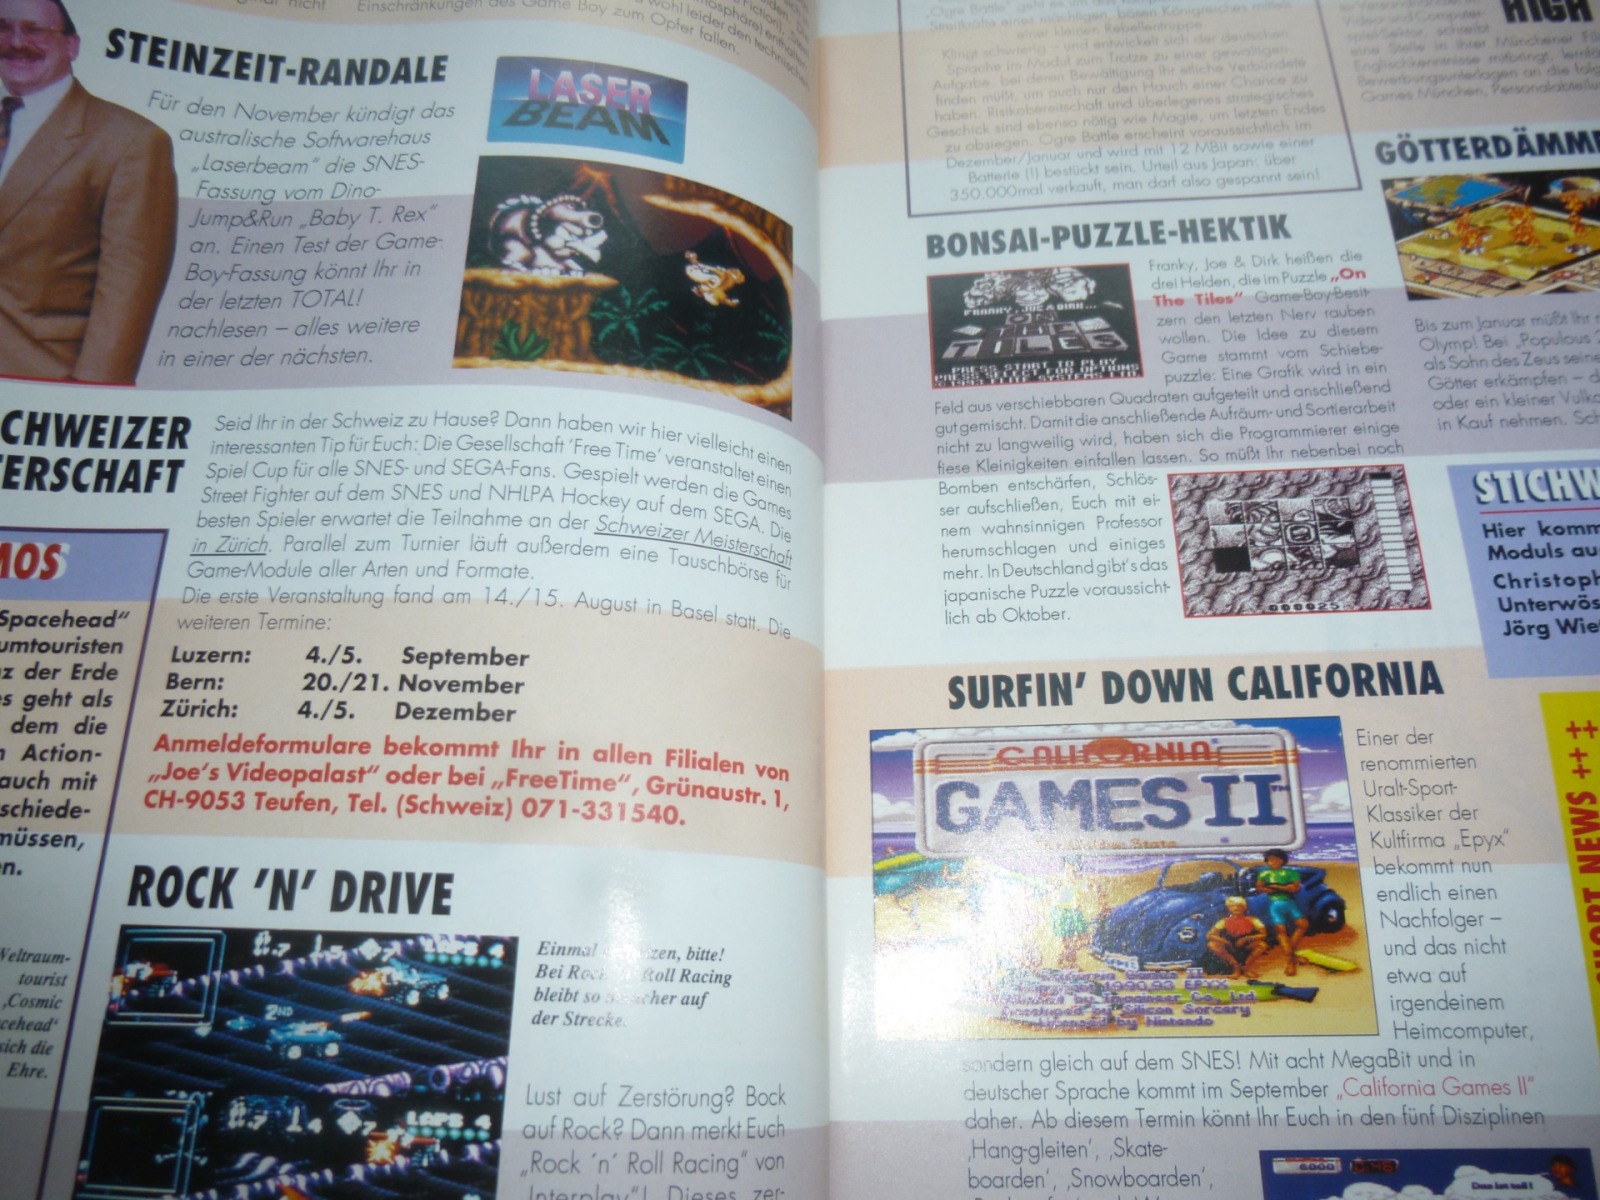 TOTAL Das unabhängige Magazin - 100% Nintendo - Ausgabe 9/93 1993 6